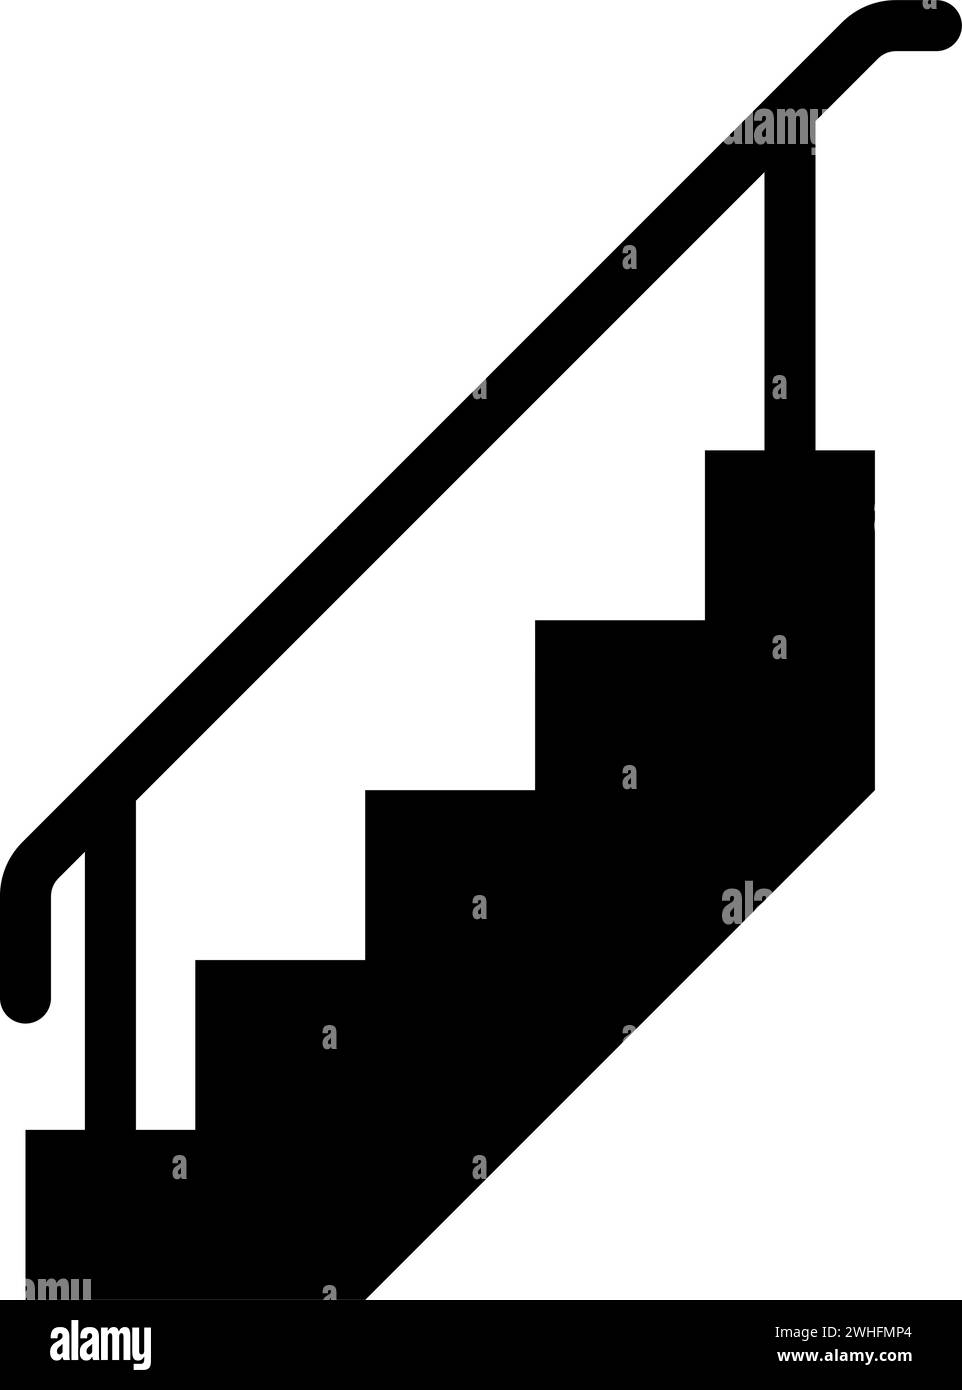 Treppe mit Geländer Treppe mit Handlauf Leiter Zaun Treppenhaus Icon schwarze Farbe Vektor Illustration Bild flach Stil einfach Stock Vektor